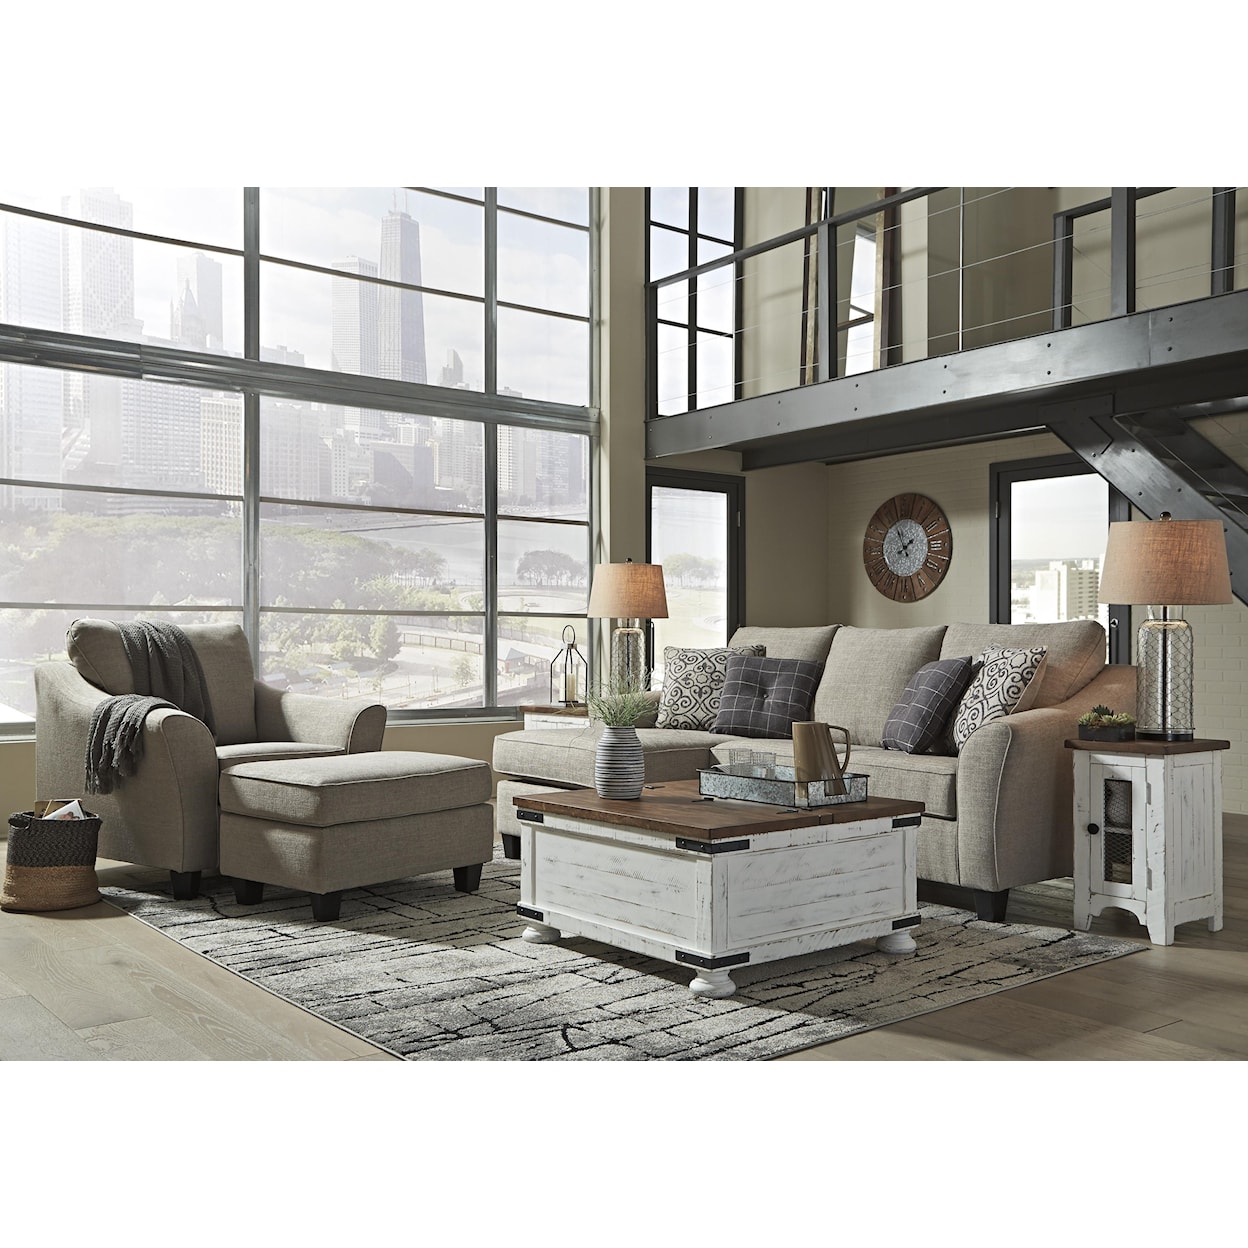 Ashley Furniture Kestrel 3 Piece Living Room Set